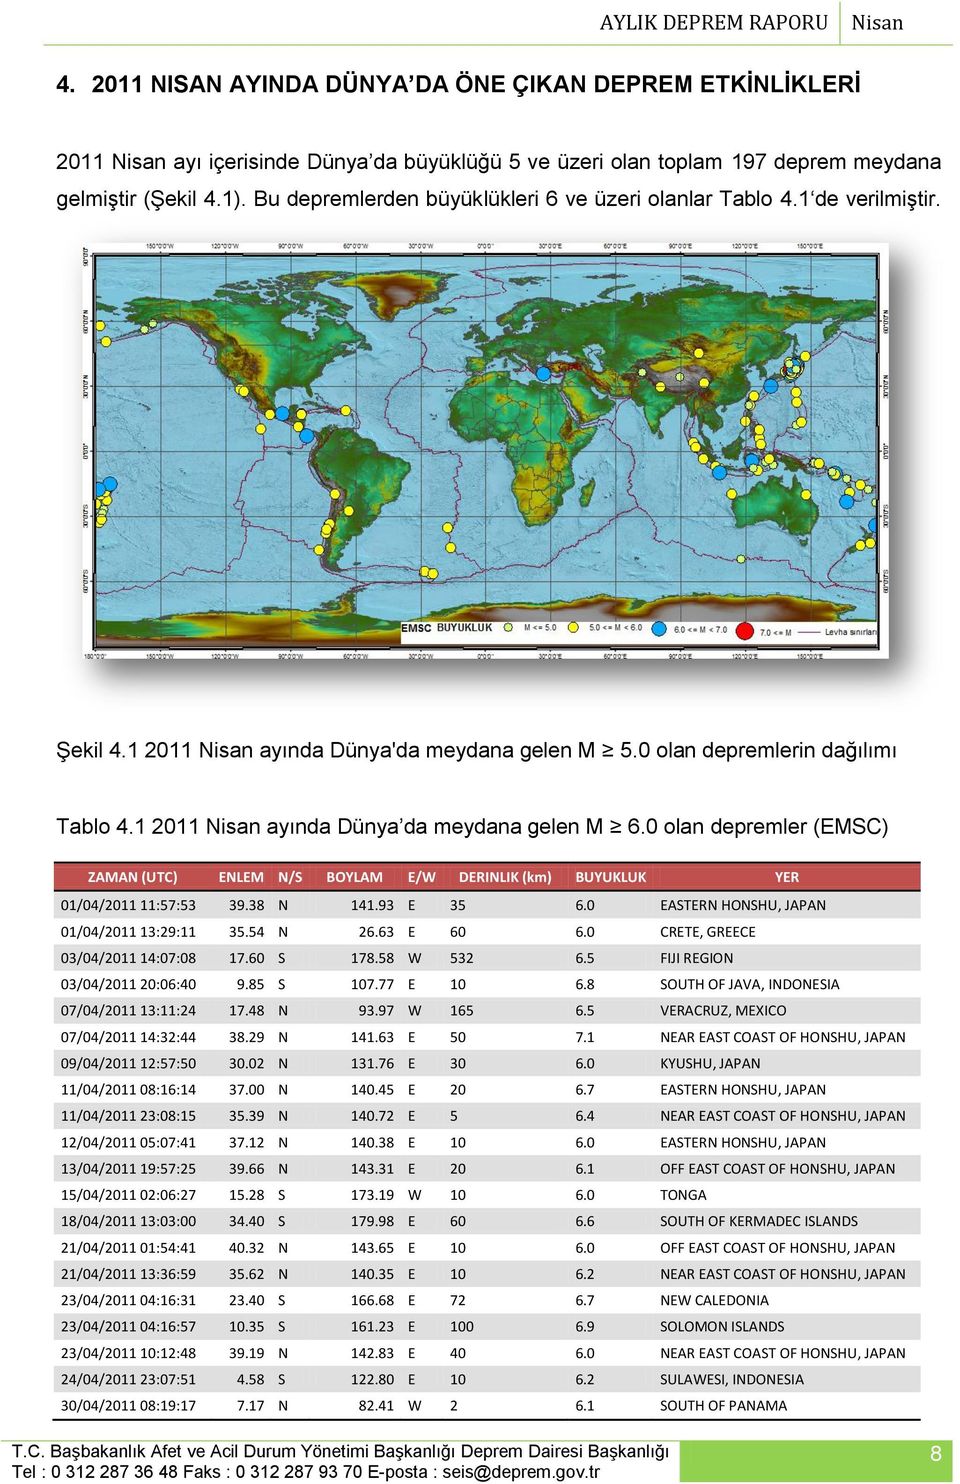 1 2011 Nisan ayında Dünya da meydana gelen M 6.0 olan depremler (EMSC) ZAMAN (UTC) ENLEM N/S BOYLAM E/W DERINLIK (km) BUYUKLUK YER 01/04/2011 11:57:53 39.38 N 141.93 E 35 6.